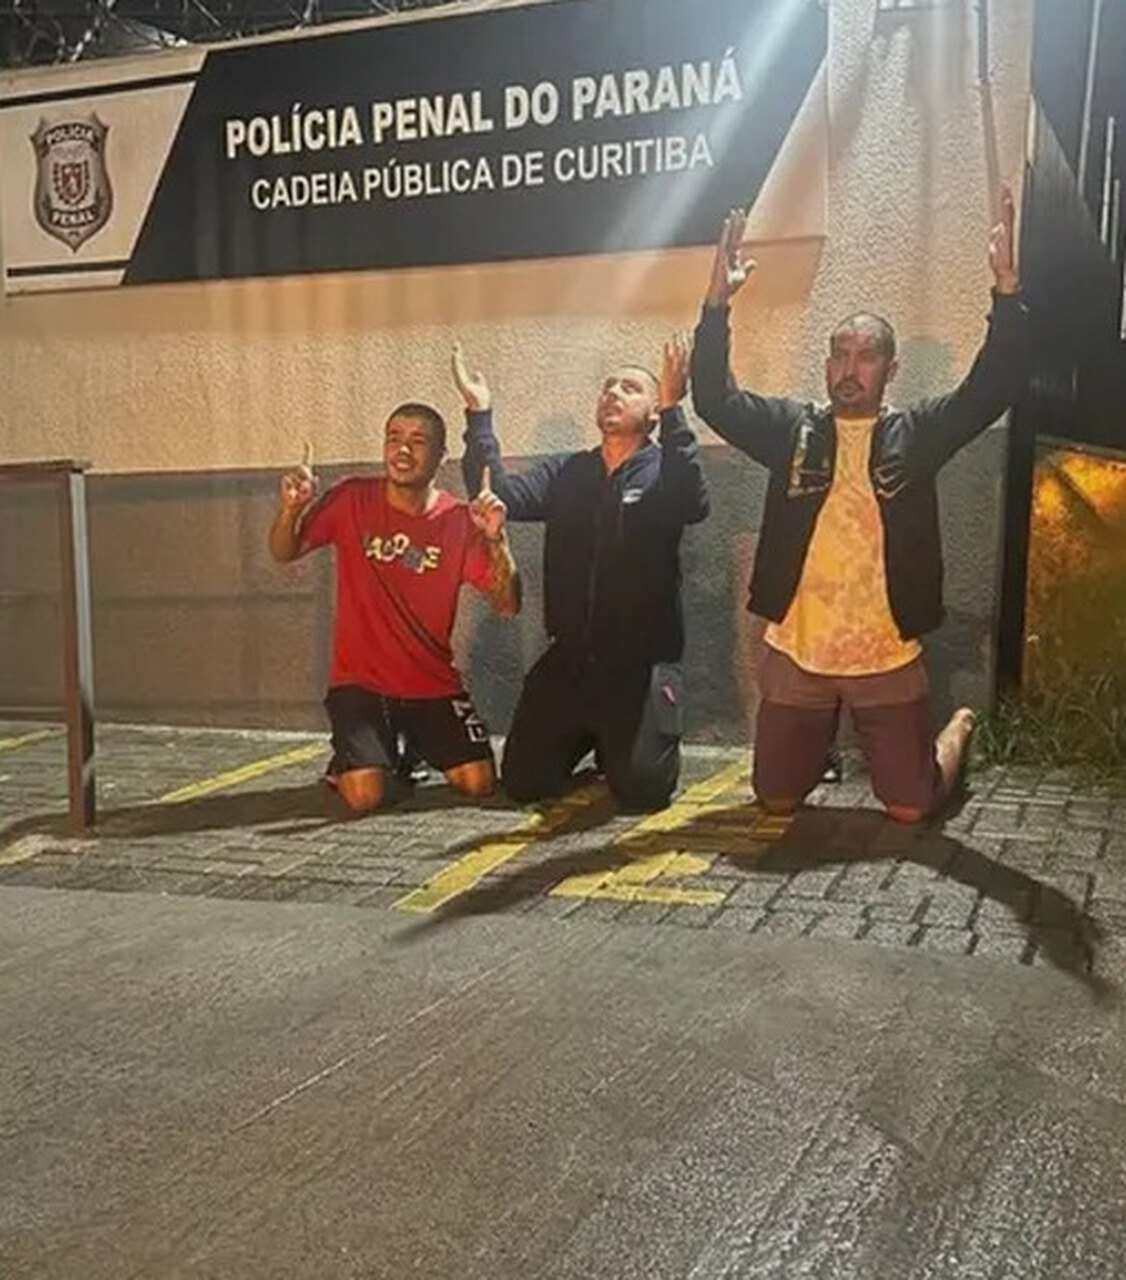 De motoboy a proprietário de carros de luxo: veja como agia grupo de influenciadores do 'Jogo do Tigre' preso no Paraná